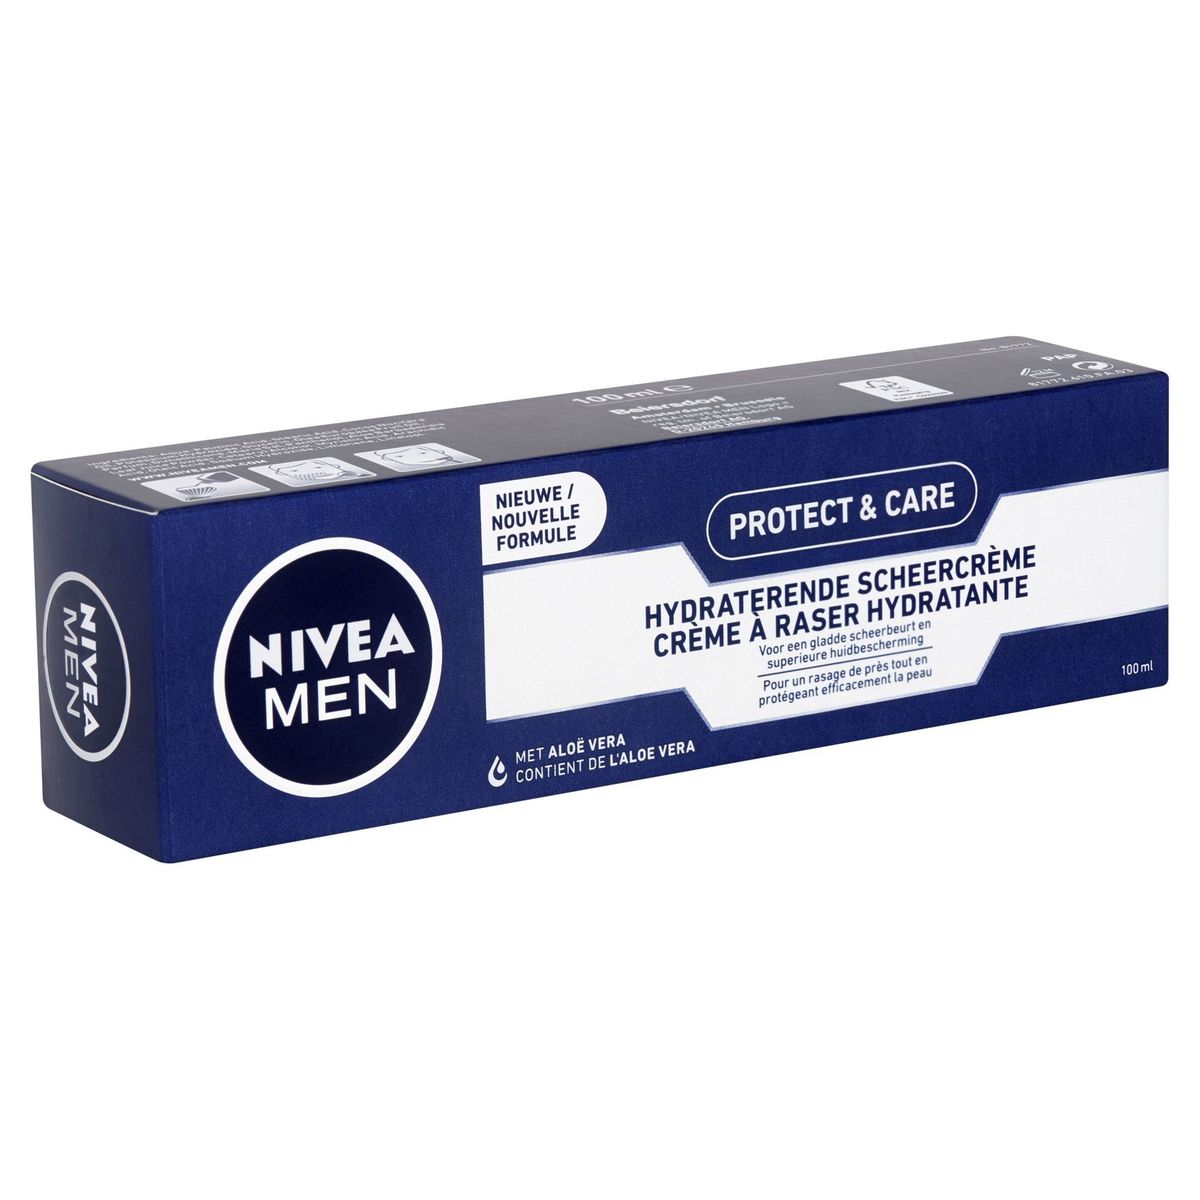 Nivea Men Protect & Care Hydraterende Scheercrème 100 ml